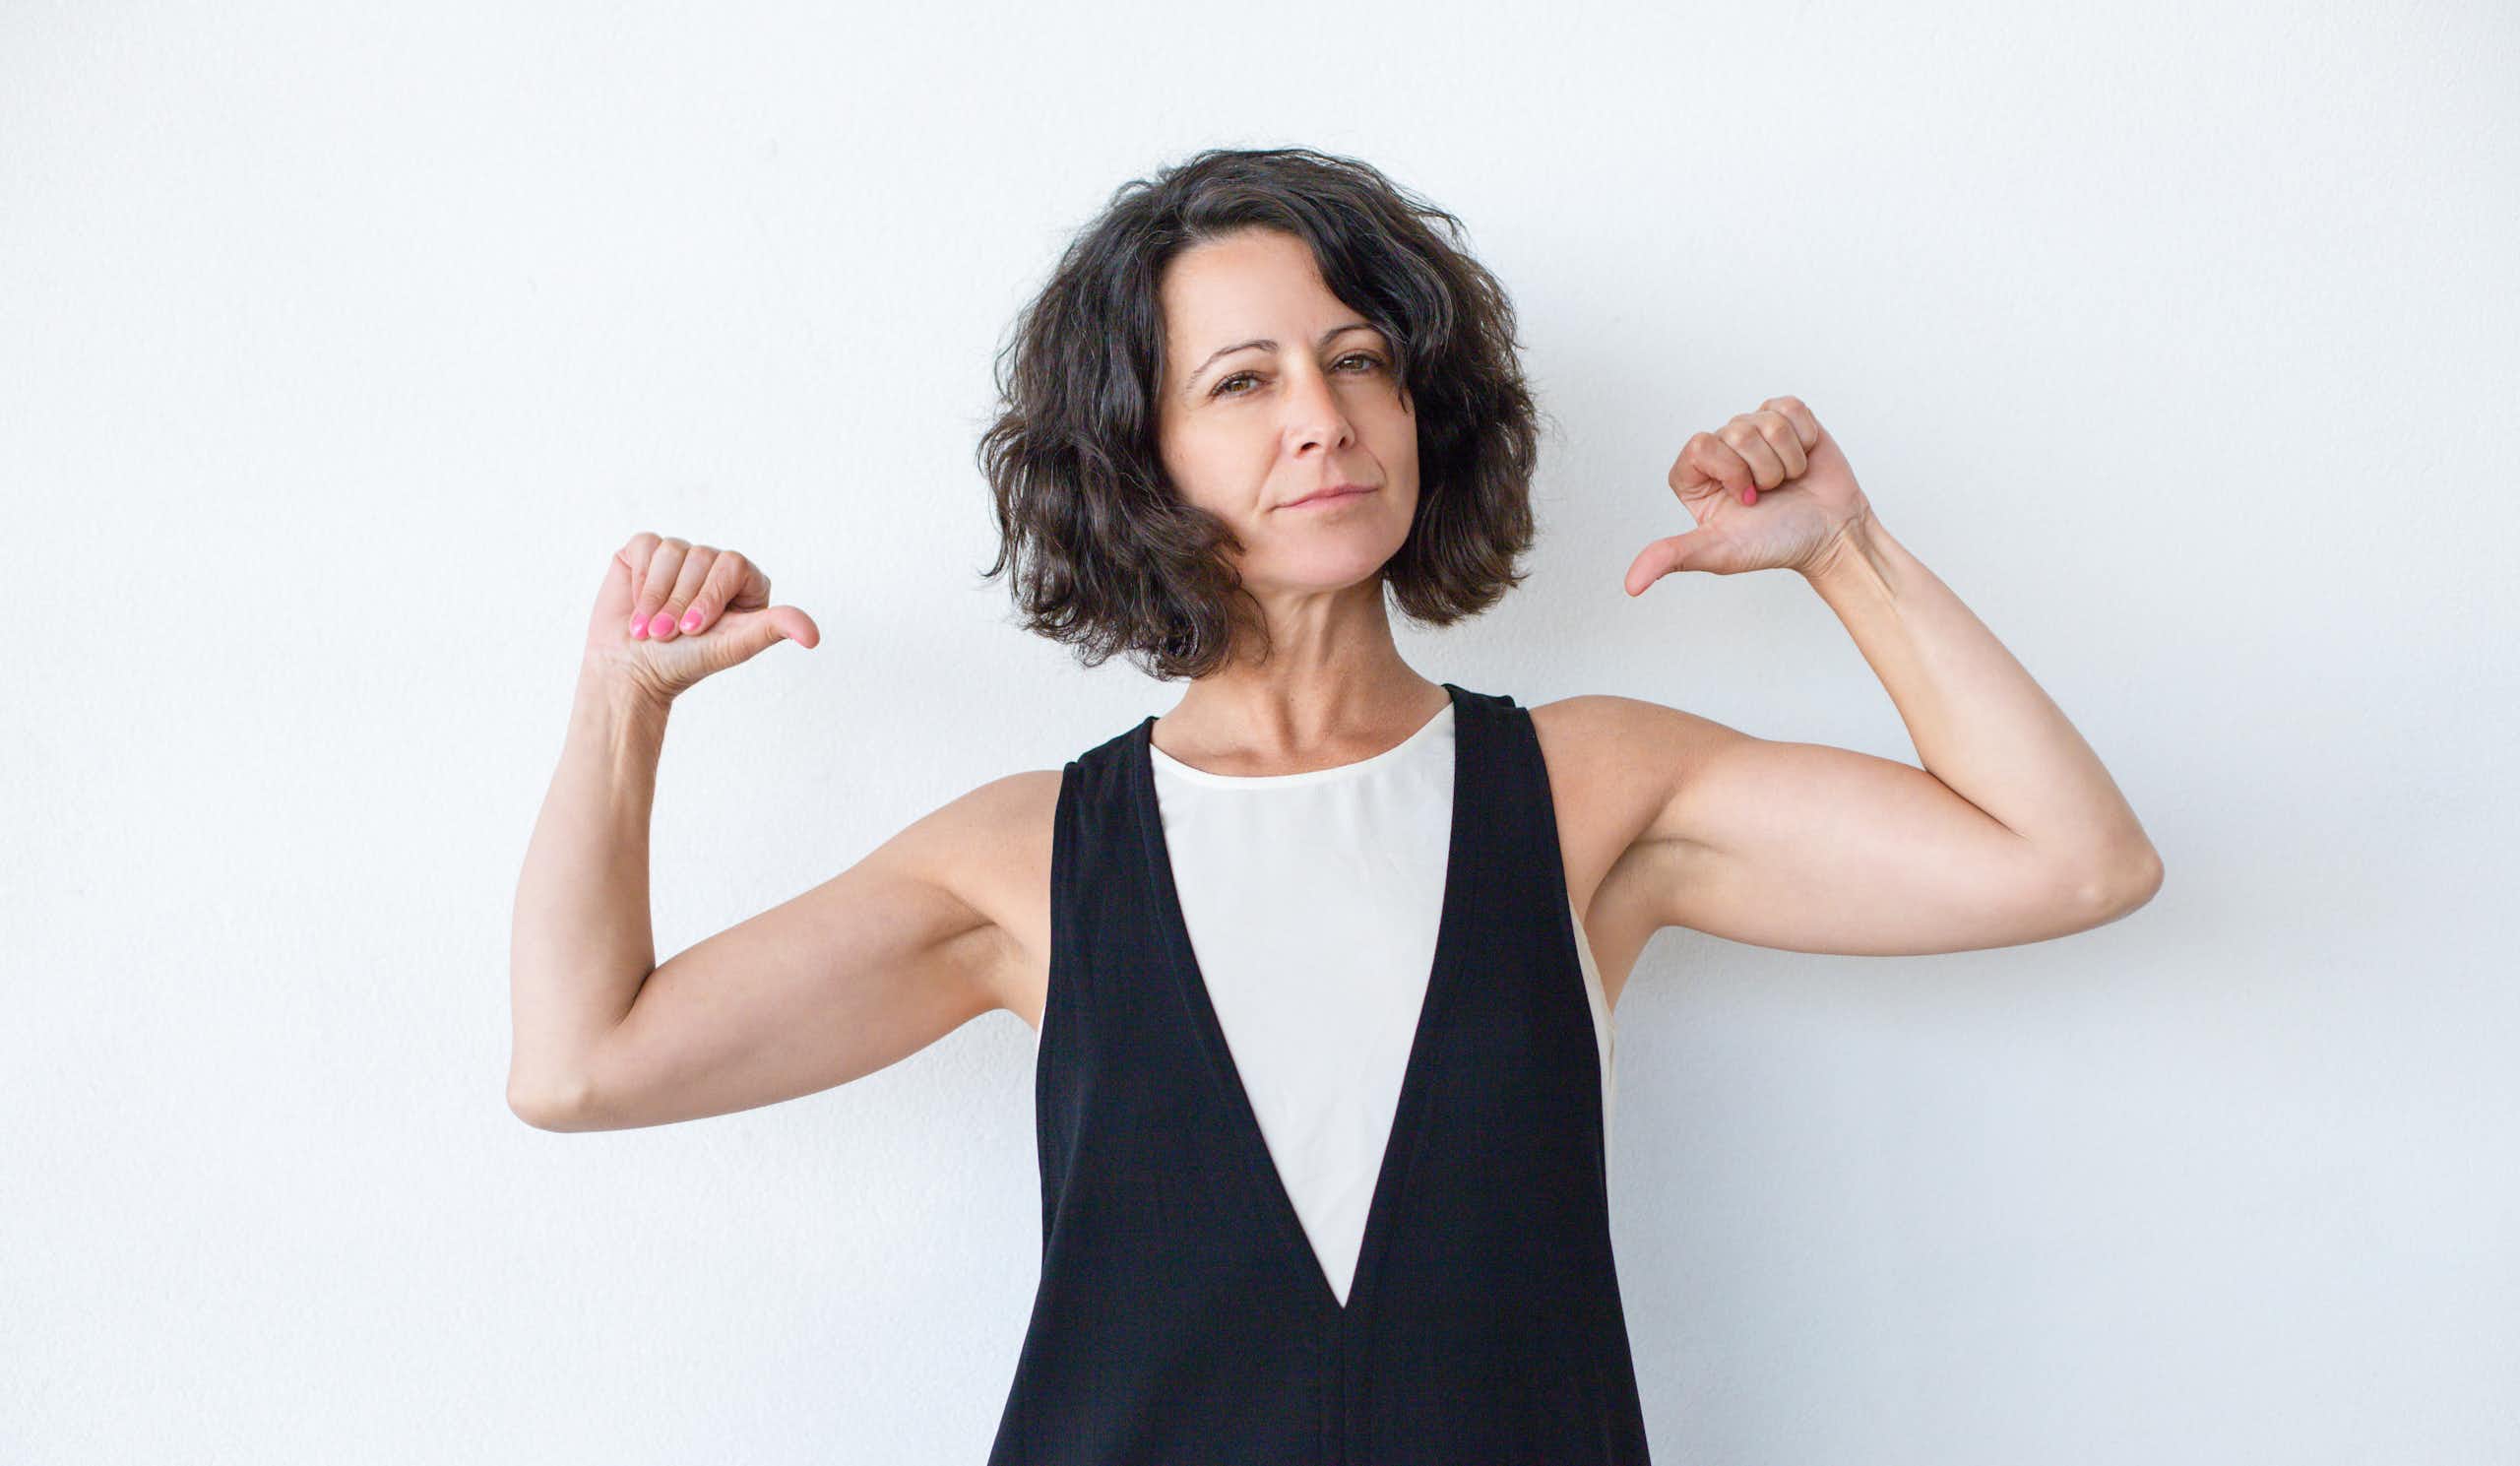 La revolución de la menopausia: propuestas para romper el estigma